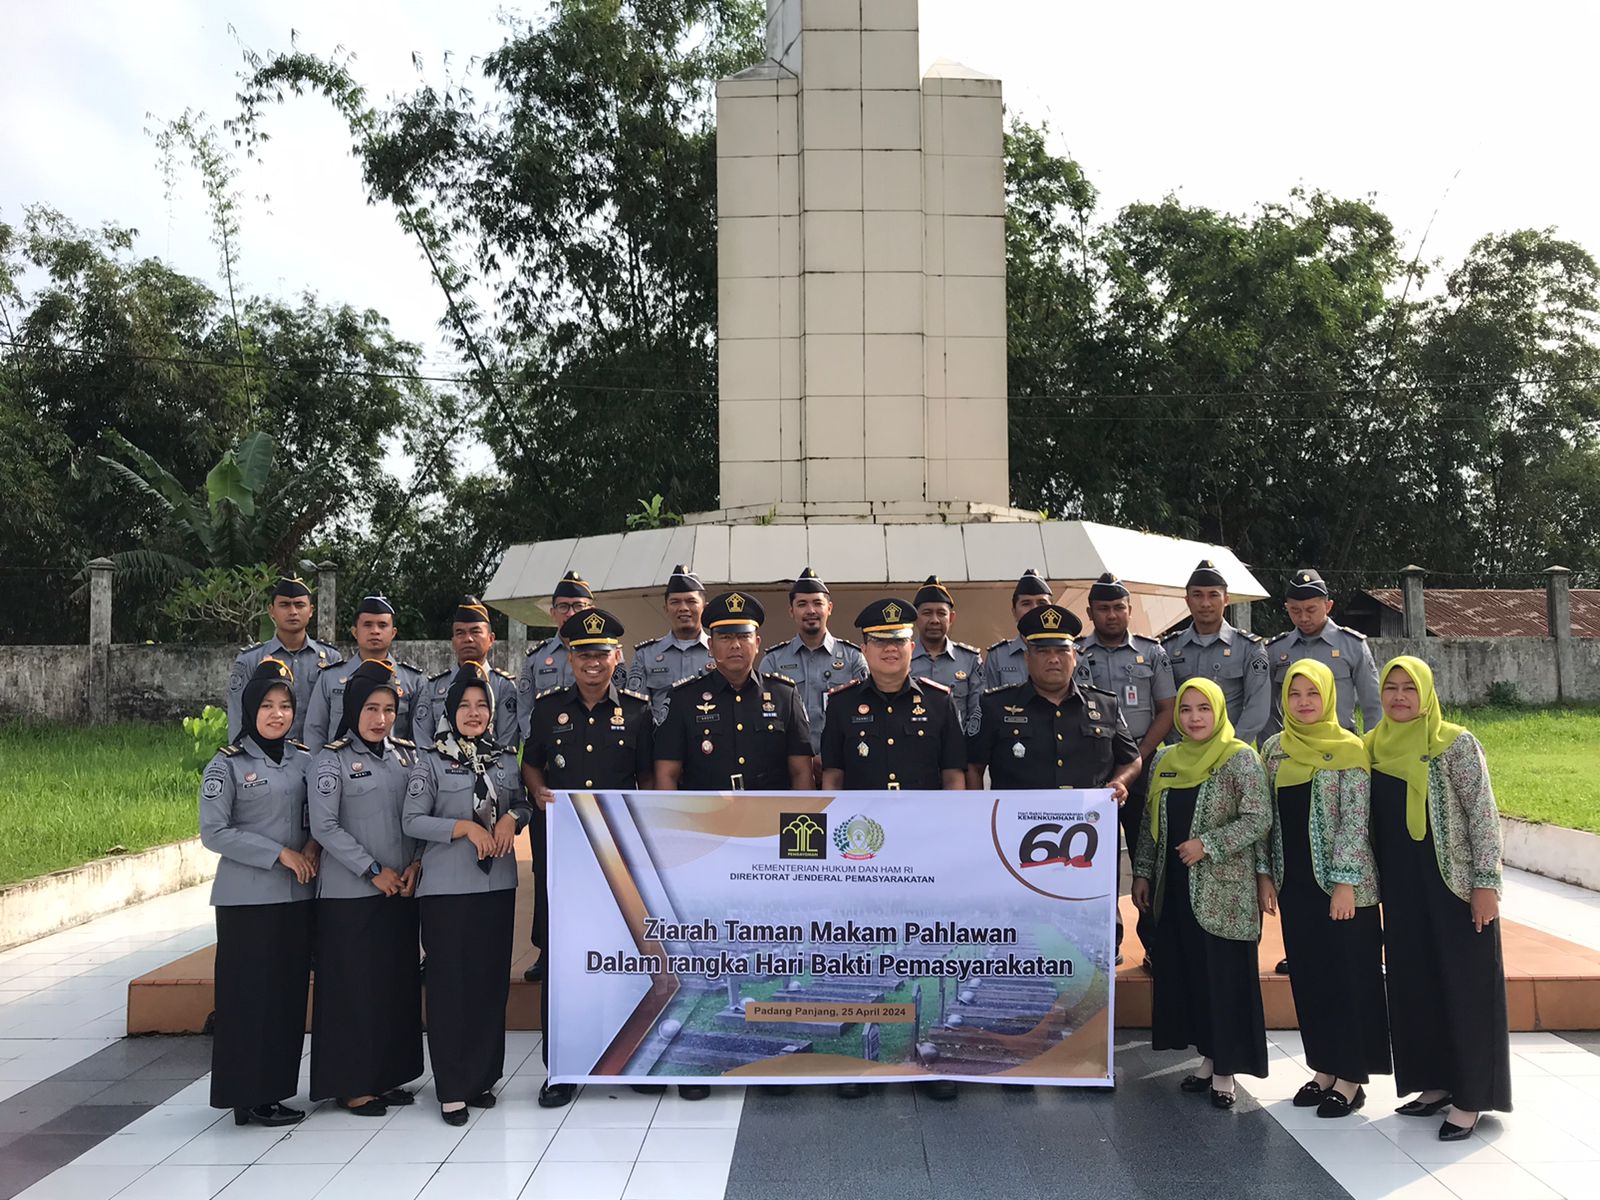 Rutan Padang Panjang Laksanakan Kegiatan Tabur Bunga Dalam Rangka Memperingati Hari Bakti Pemasyarakatan Ke-60